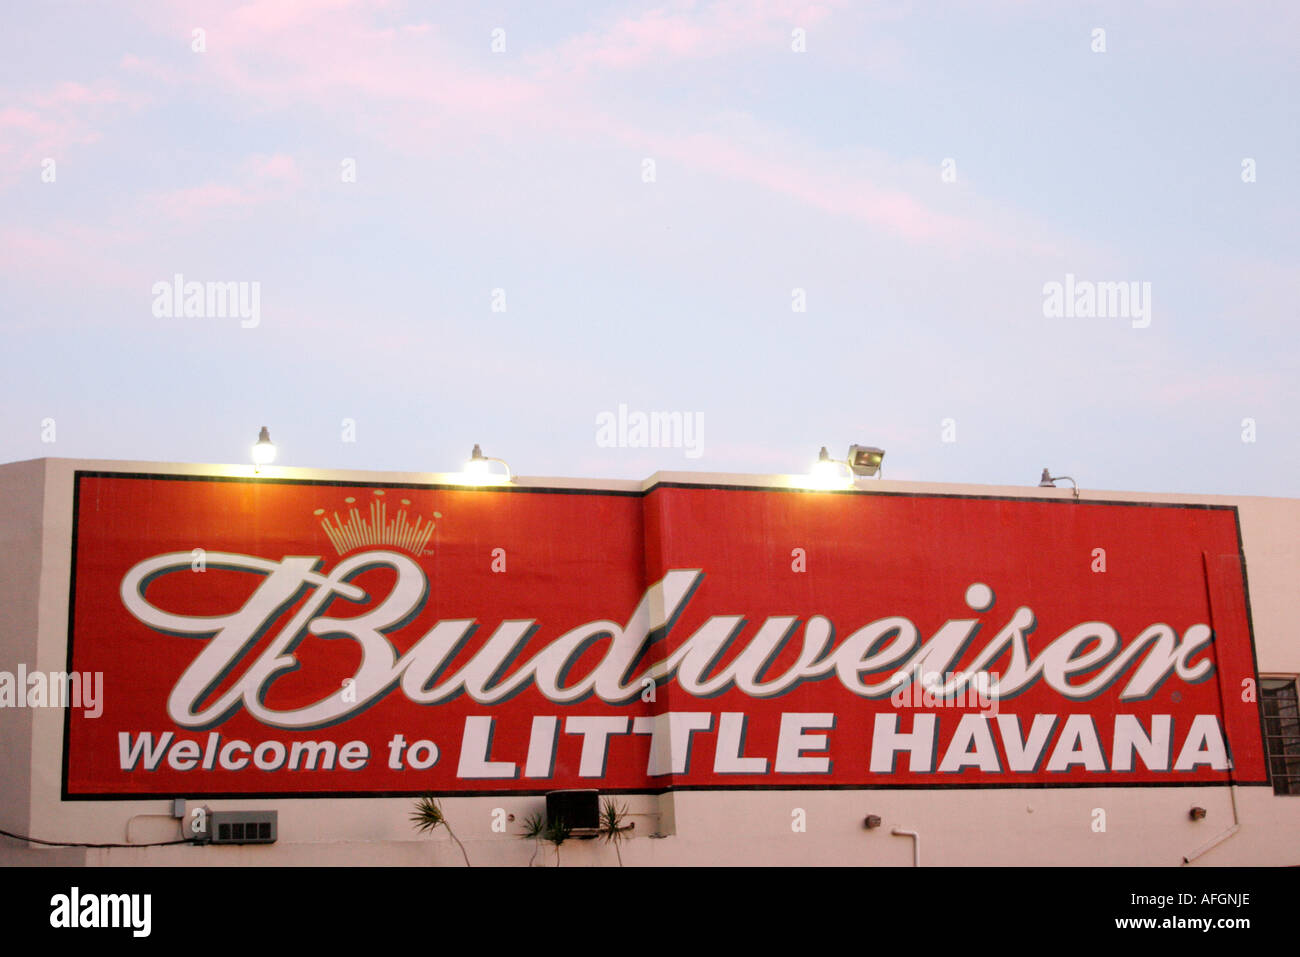 Miami Florida,Little Havana,Calle Ocho,mur mural,Budweiser,Bienvenue,annonce publicitaire,visiteurs voyage touristique tourisme landma Banque D'Images